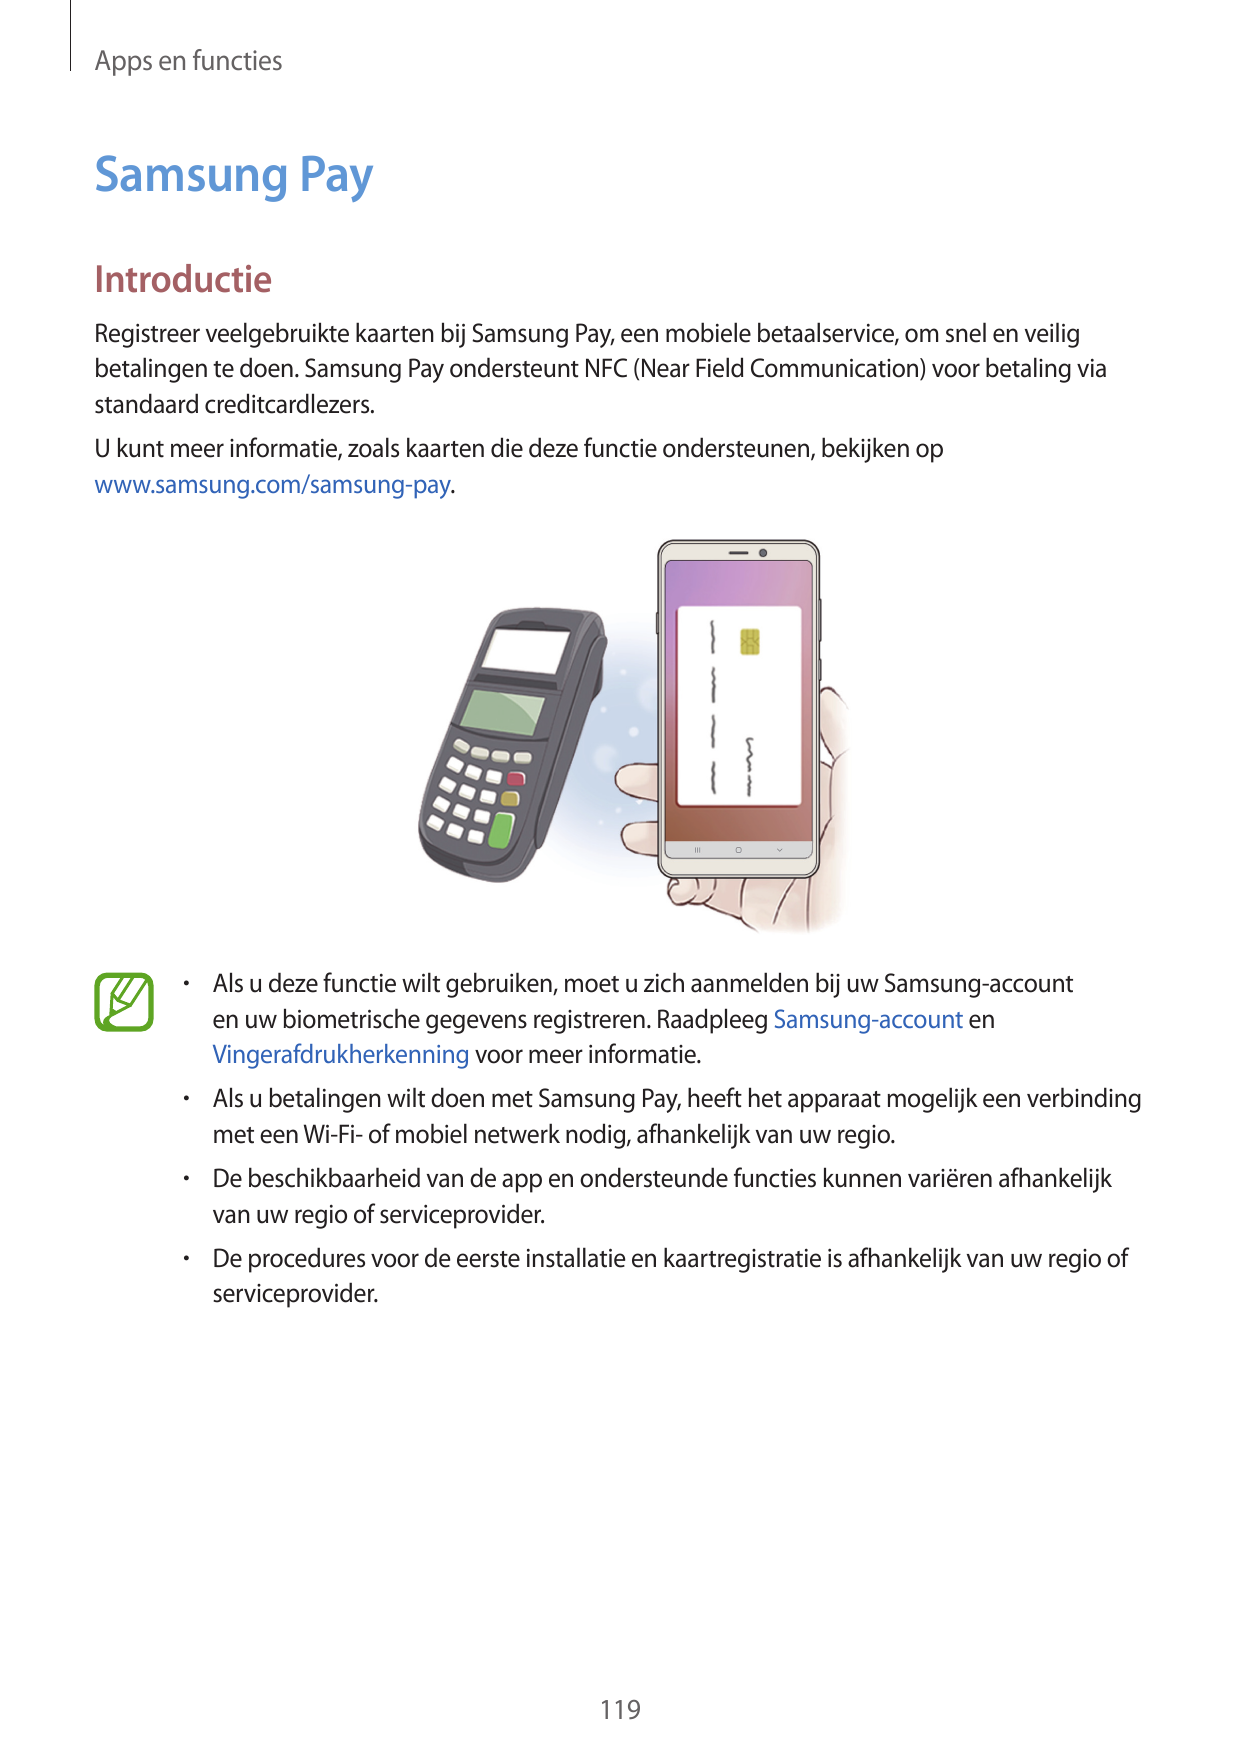 Apps en functiesSamsung PayIntroductieRegistreer veelgebruikte kaarten bij Samsung Pay, een mobiele betaalservice, om snel en ve